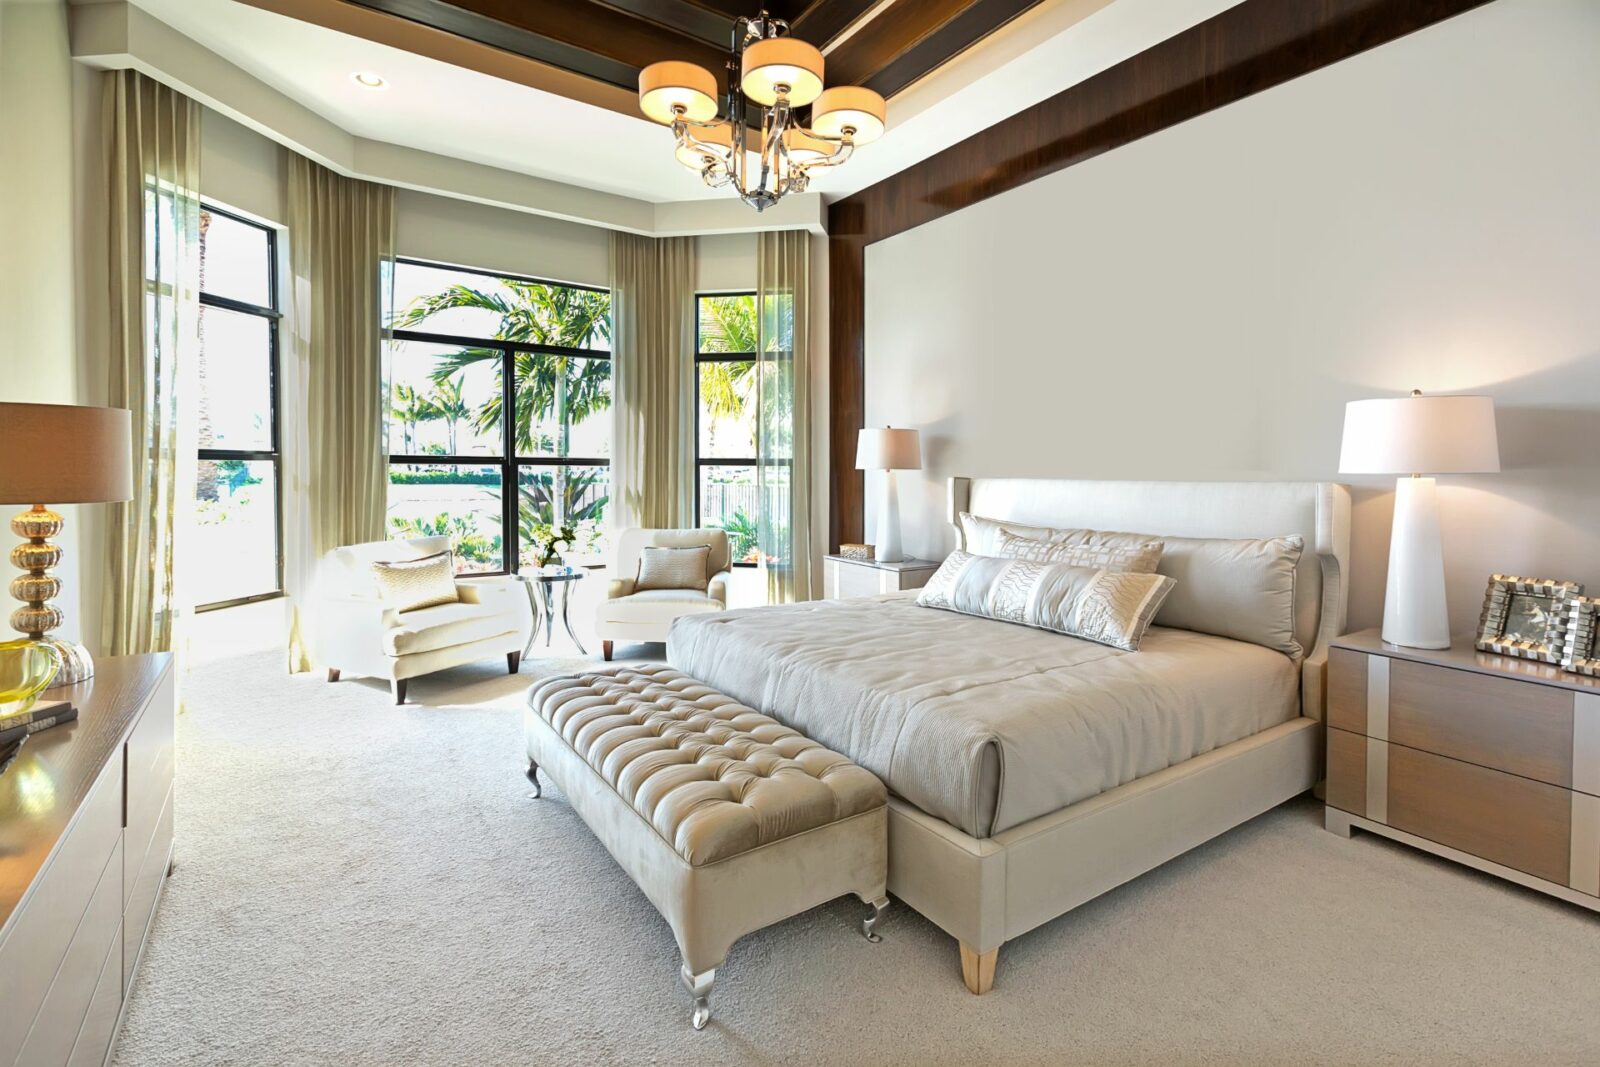 how big should a master bedroom be